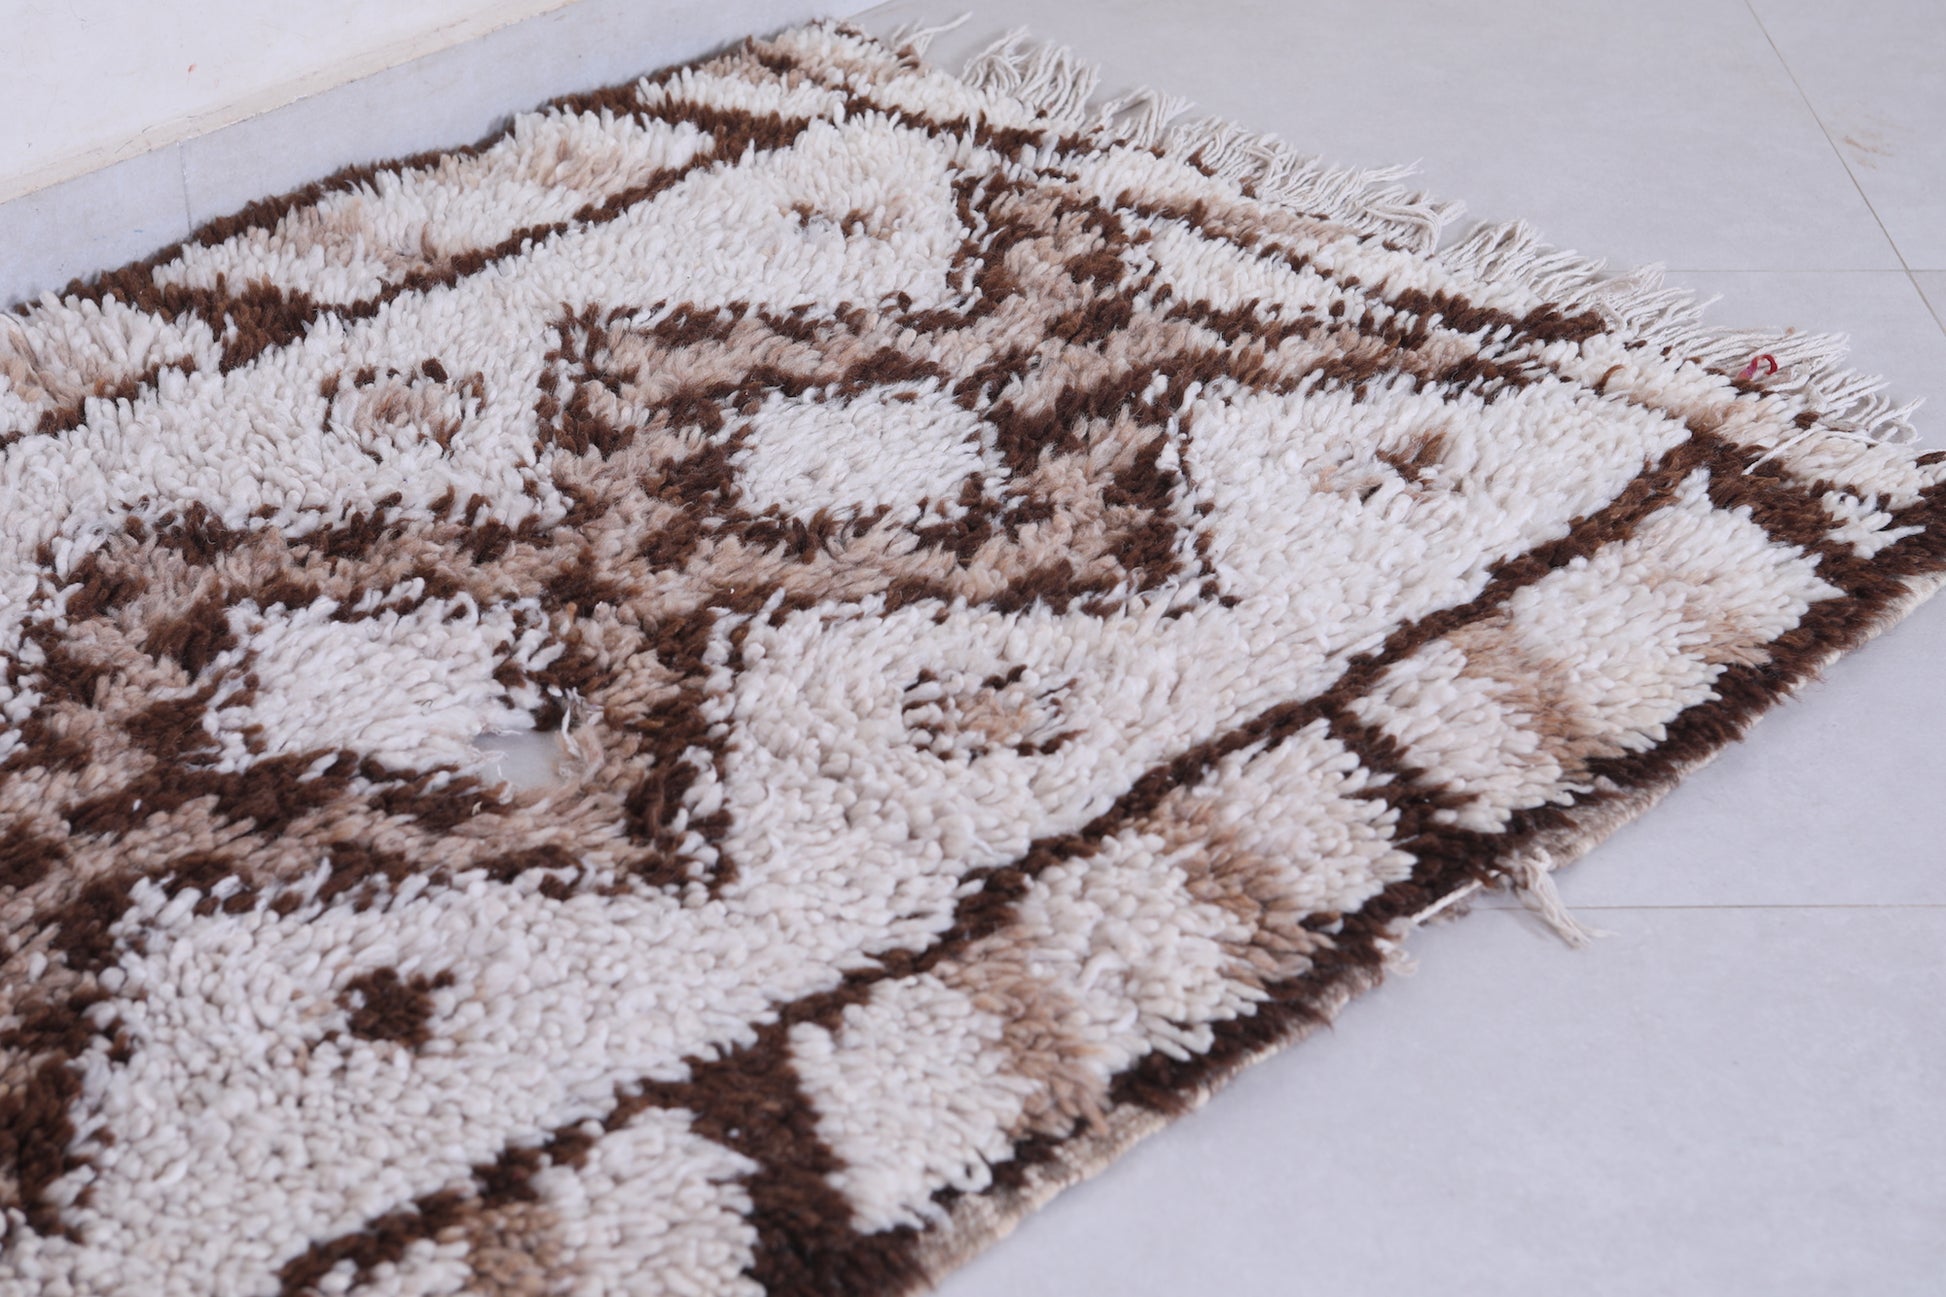 Vintage handmade moroccan berber runner rug  2.7 FT X 6.1 FT